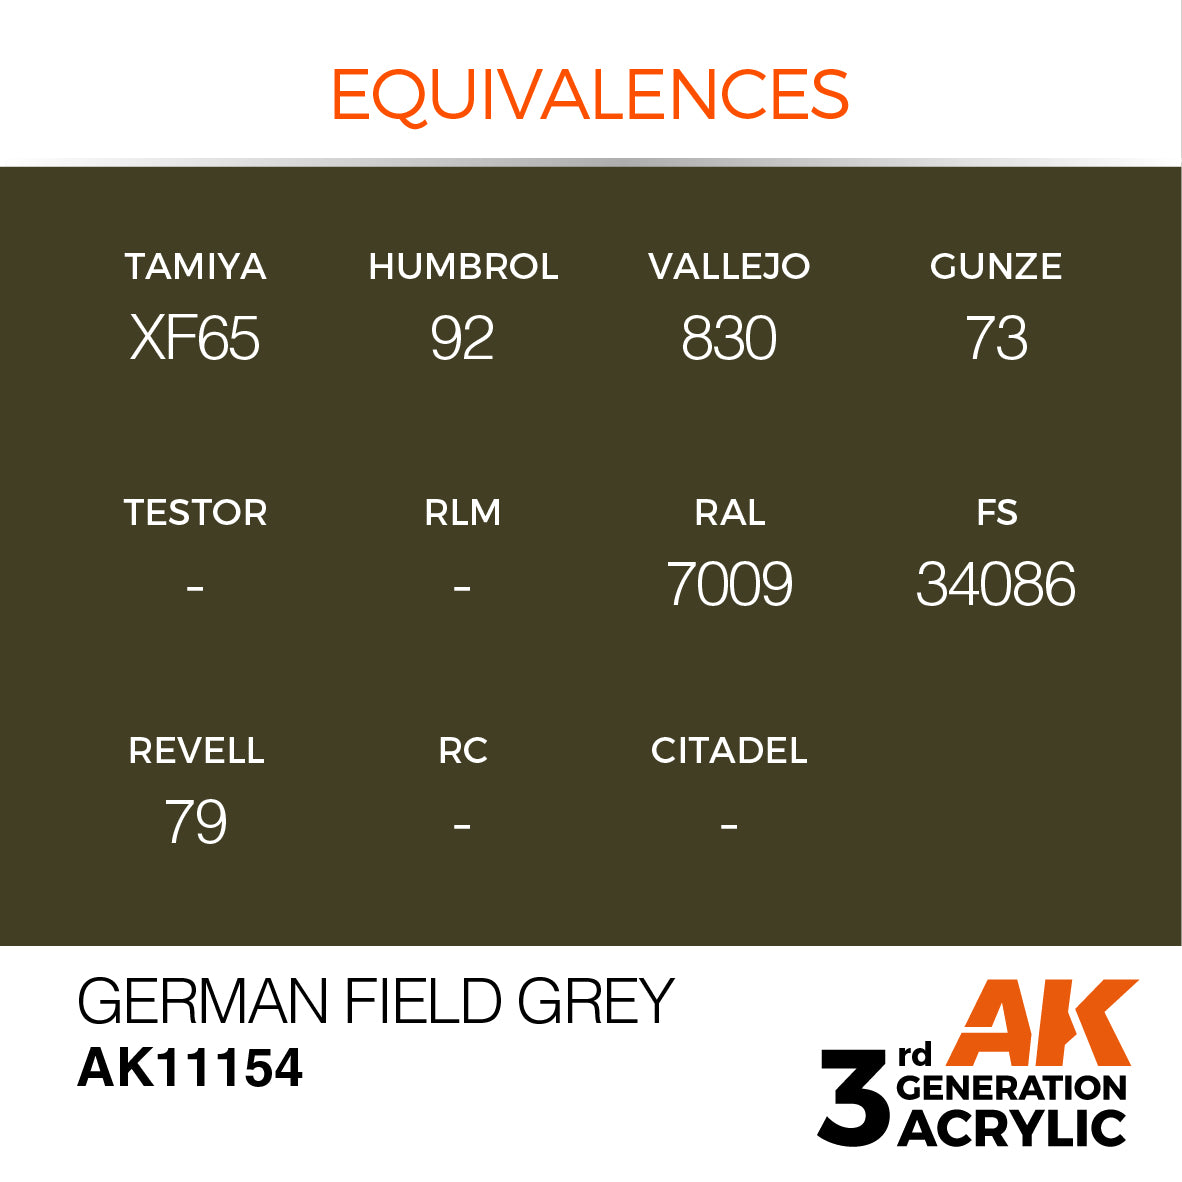 German Field Grey